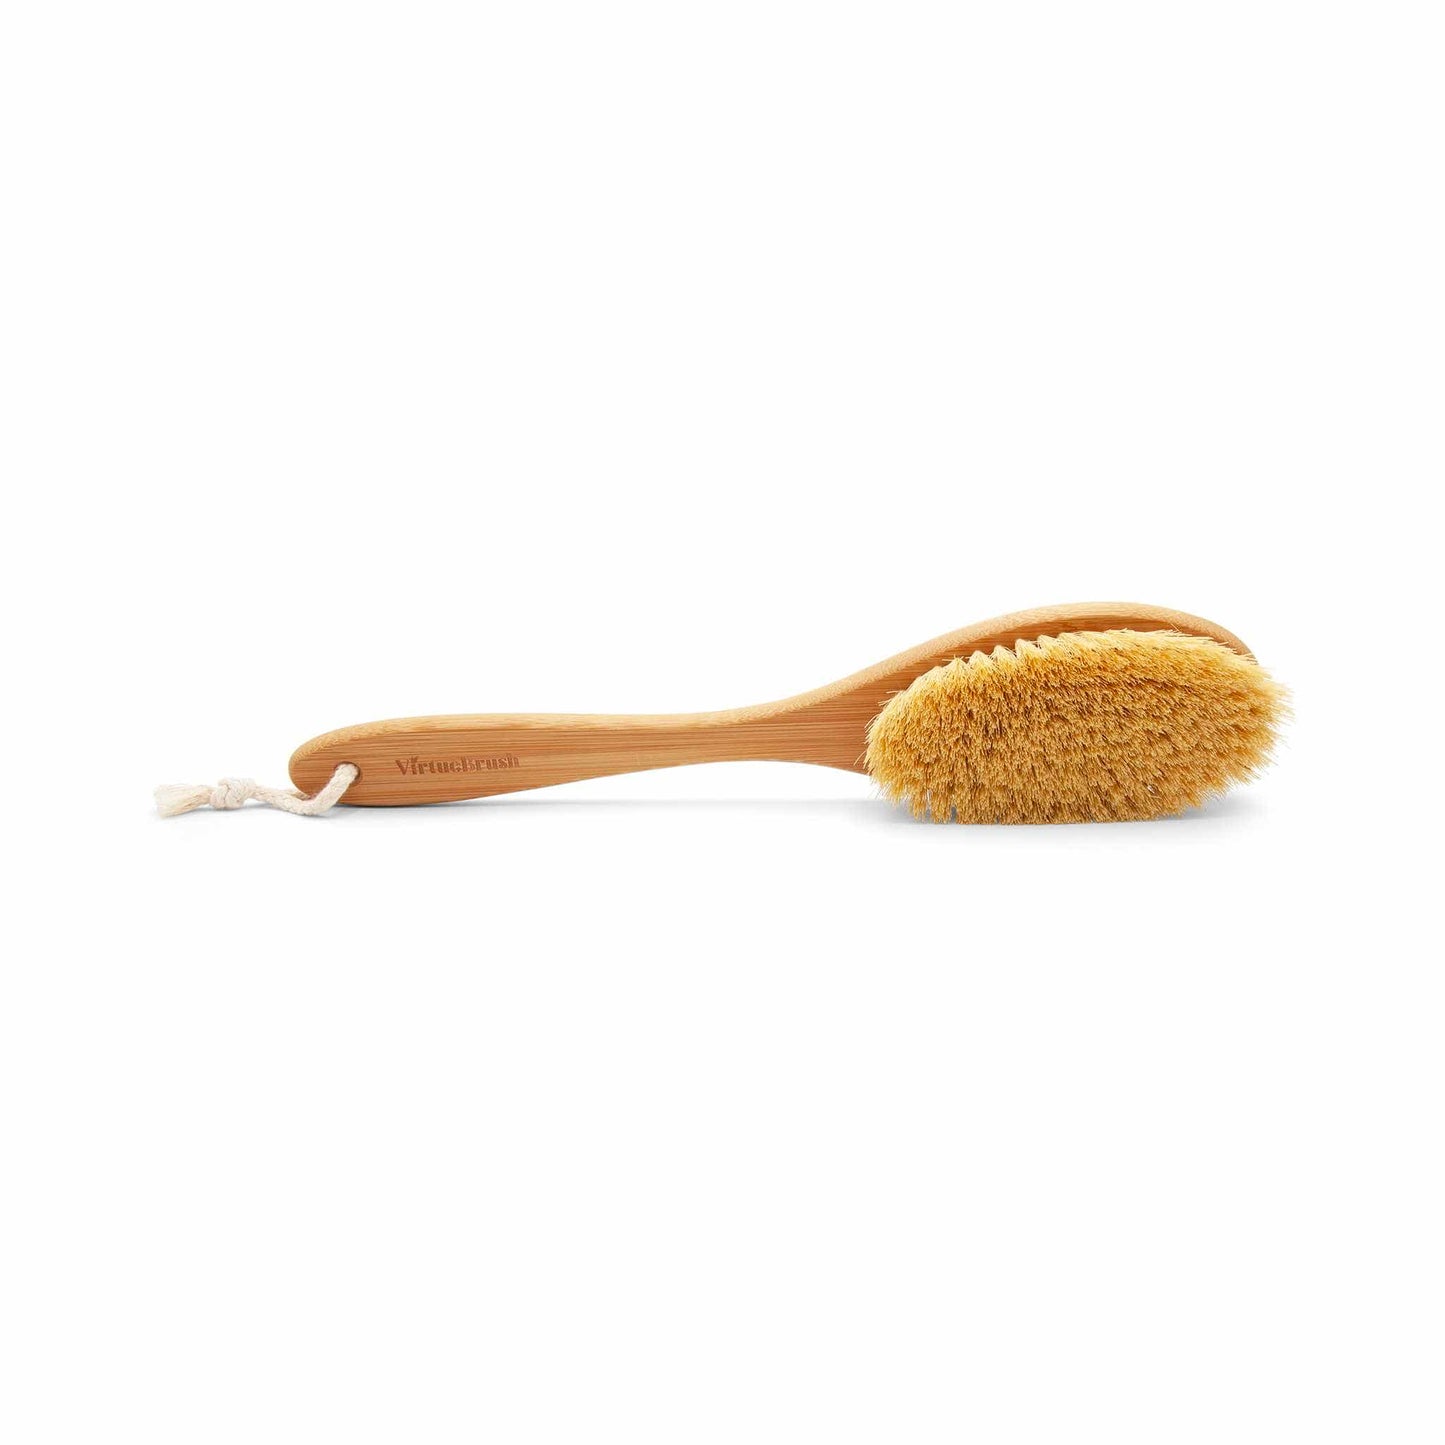 Virtue Brush Body Brush Long Bamboo Body Brush with Natural Sisal Bristle - Virtue Brush